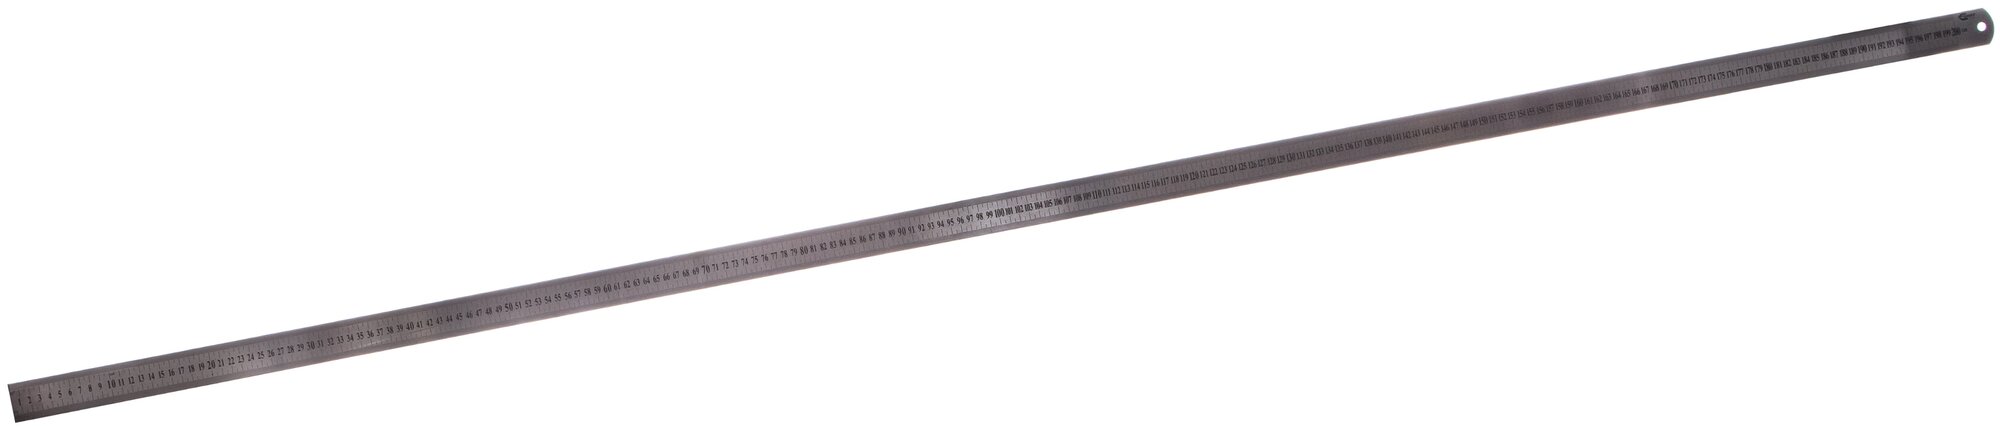 Griff Линейка металлическаяс двусторонней шкалой 2000x39x18мм D112026 D112026 .